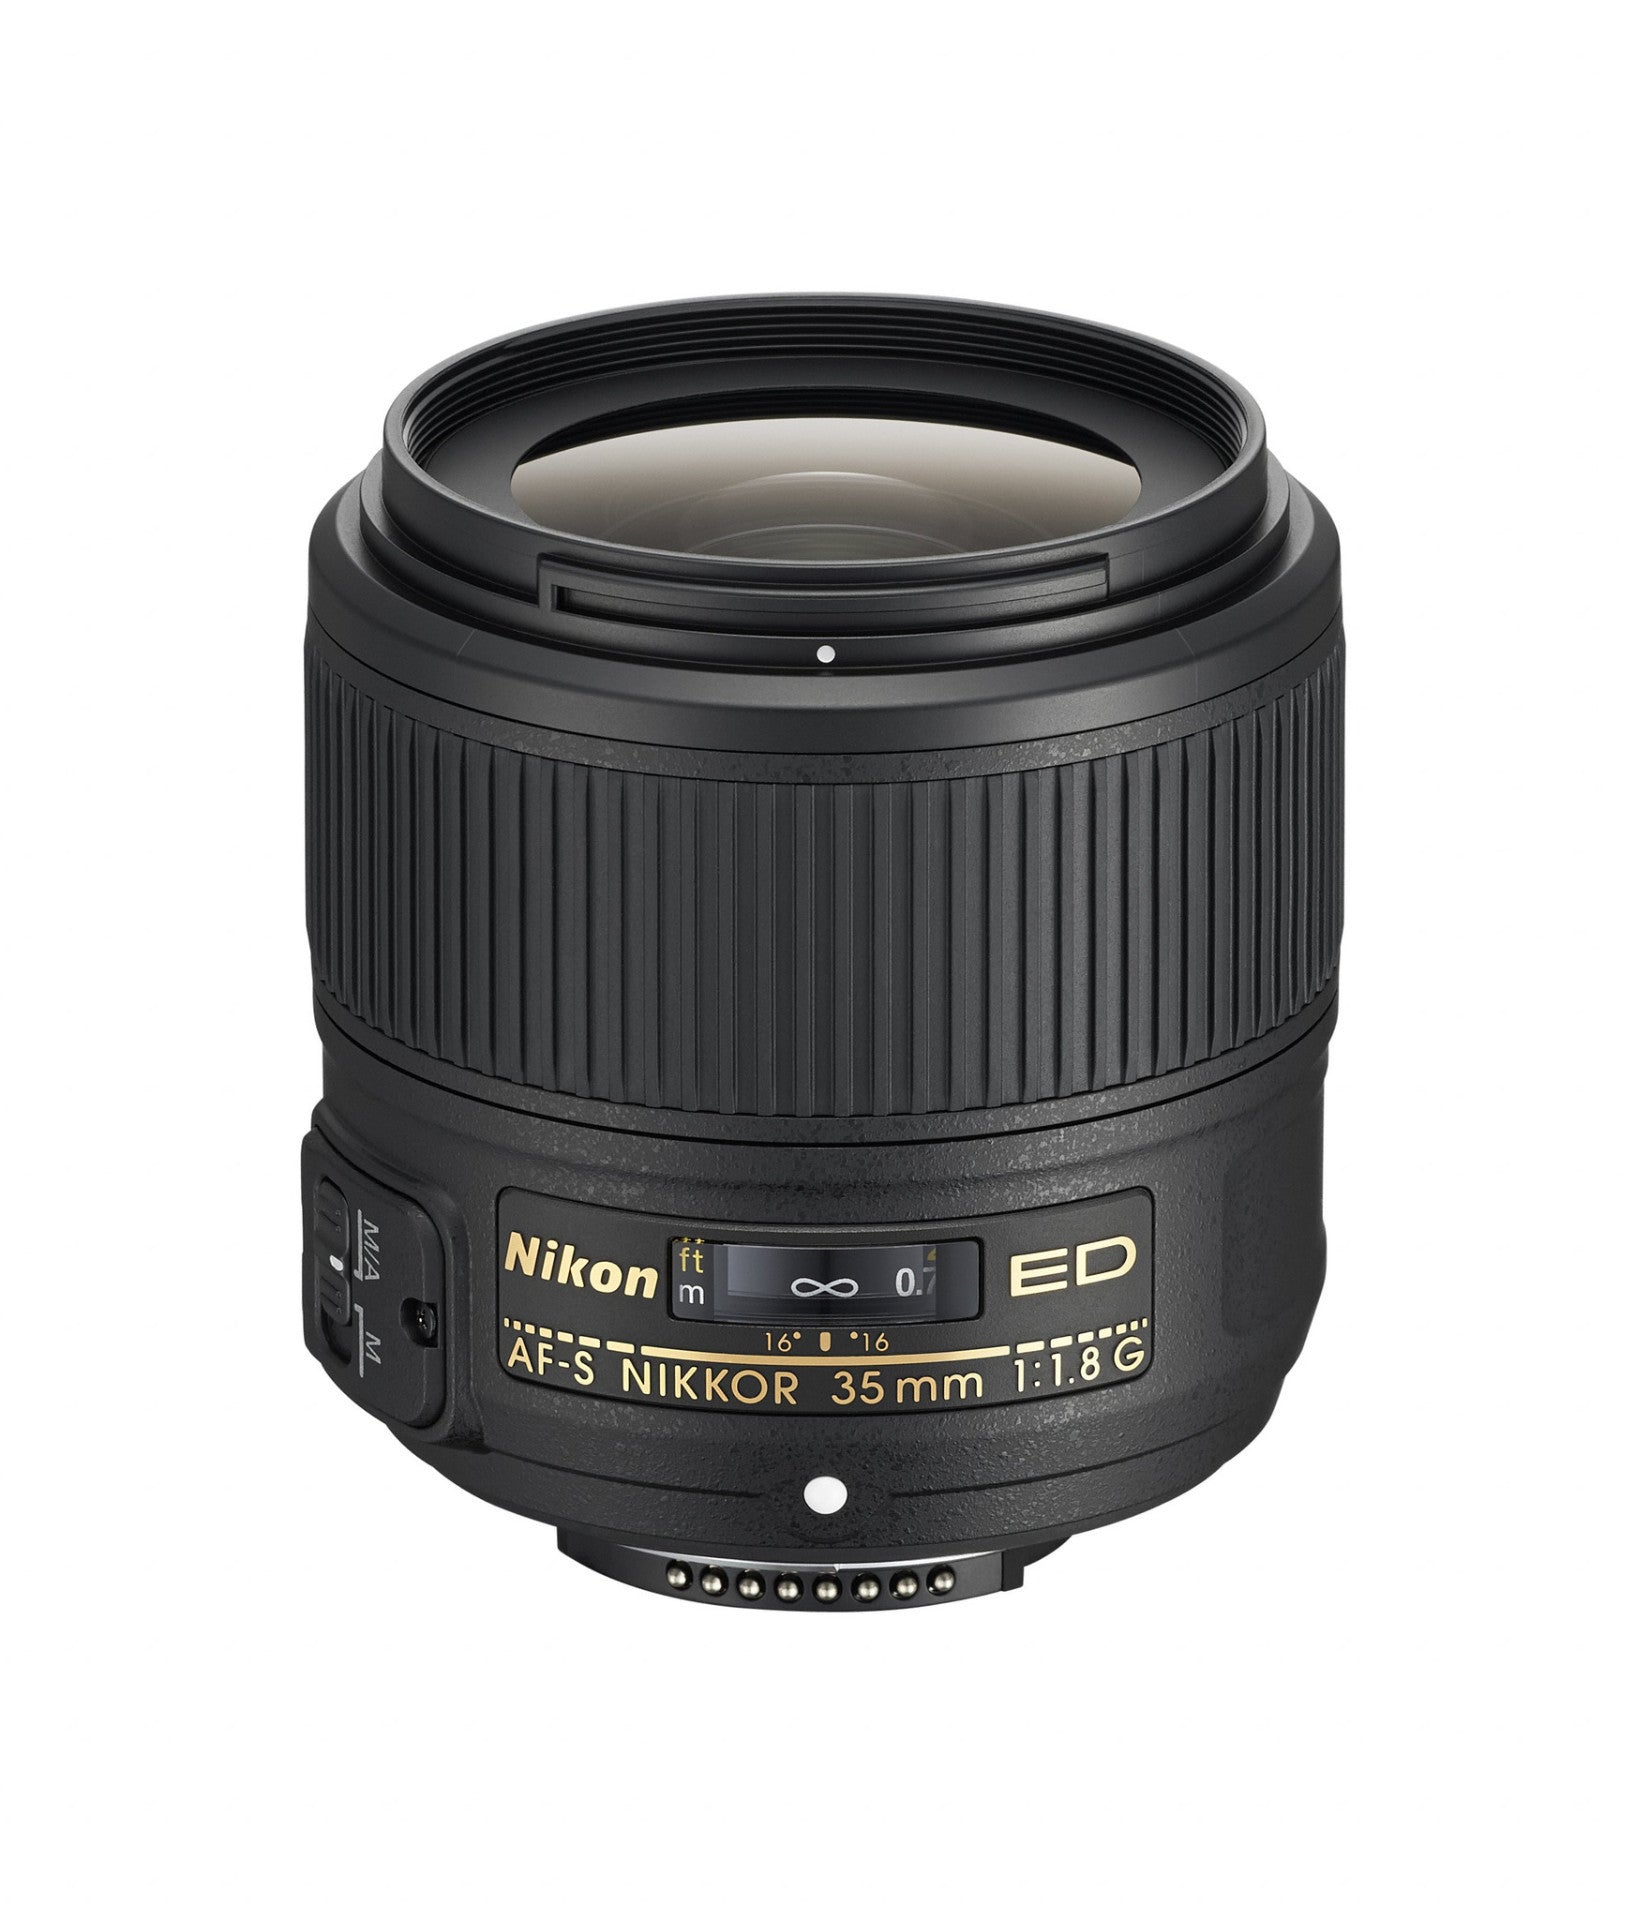 Nikon 35mm f/1.8G ED AF-S Nikkor Lens, lenses slr lenses, Nikon - Pictureline 